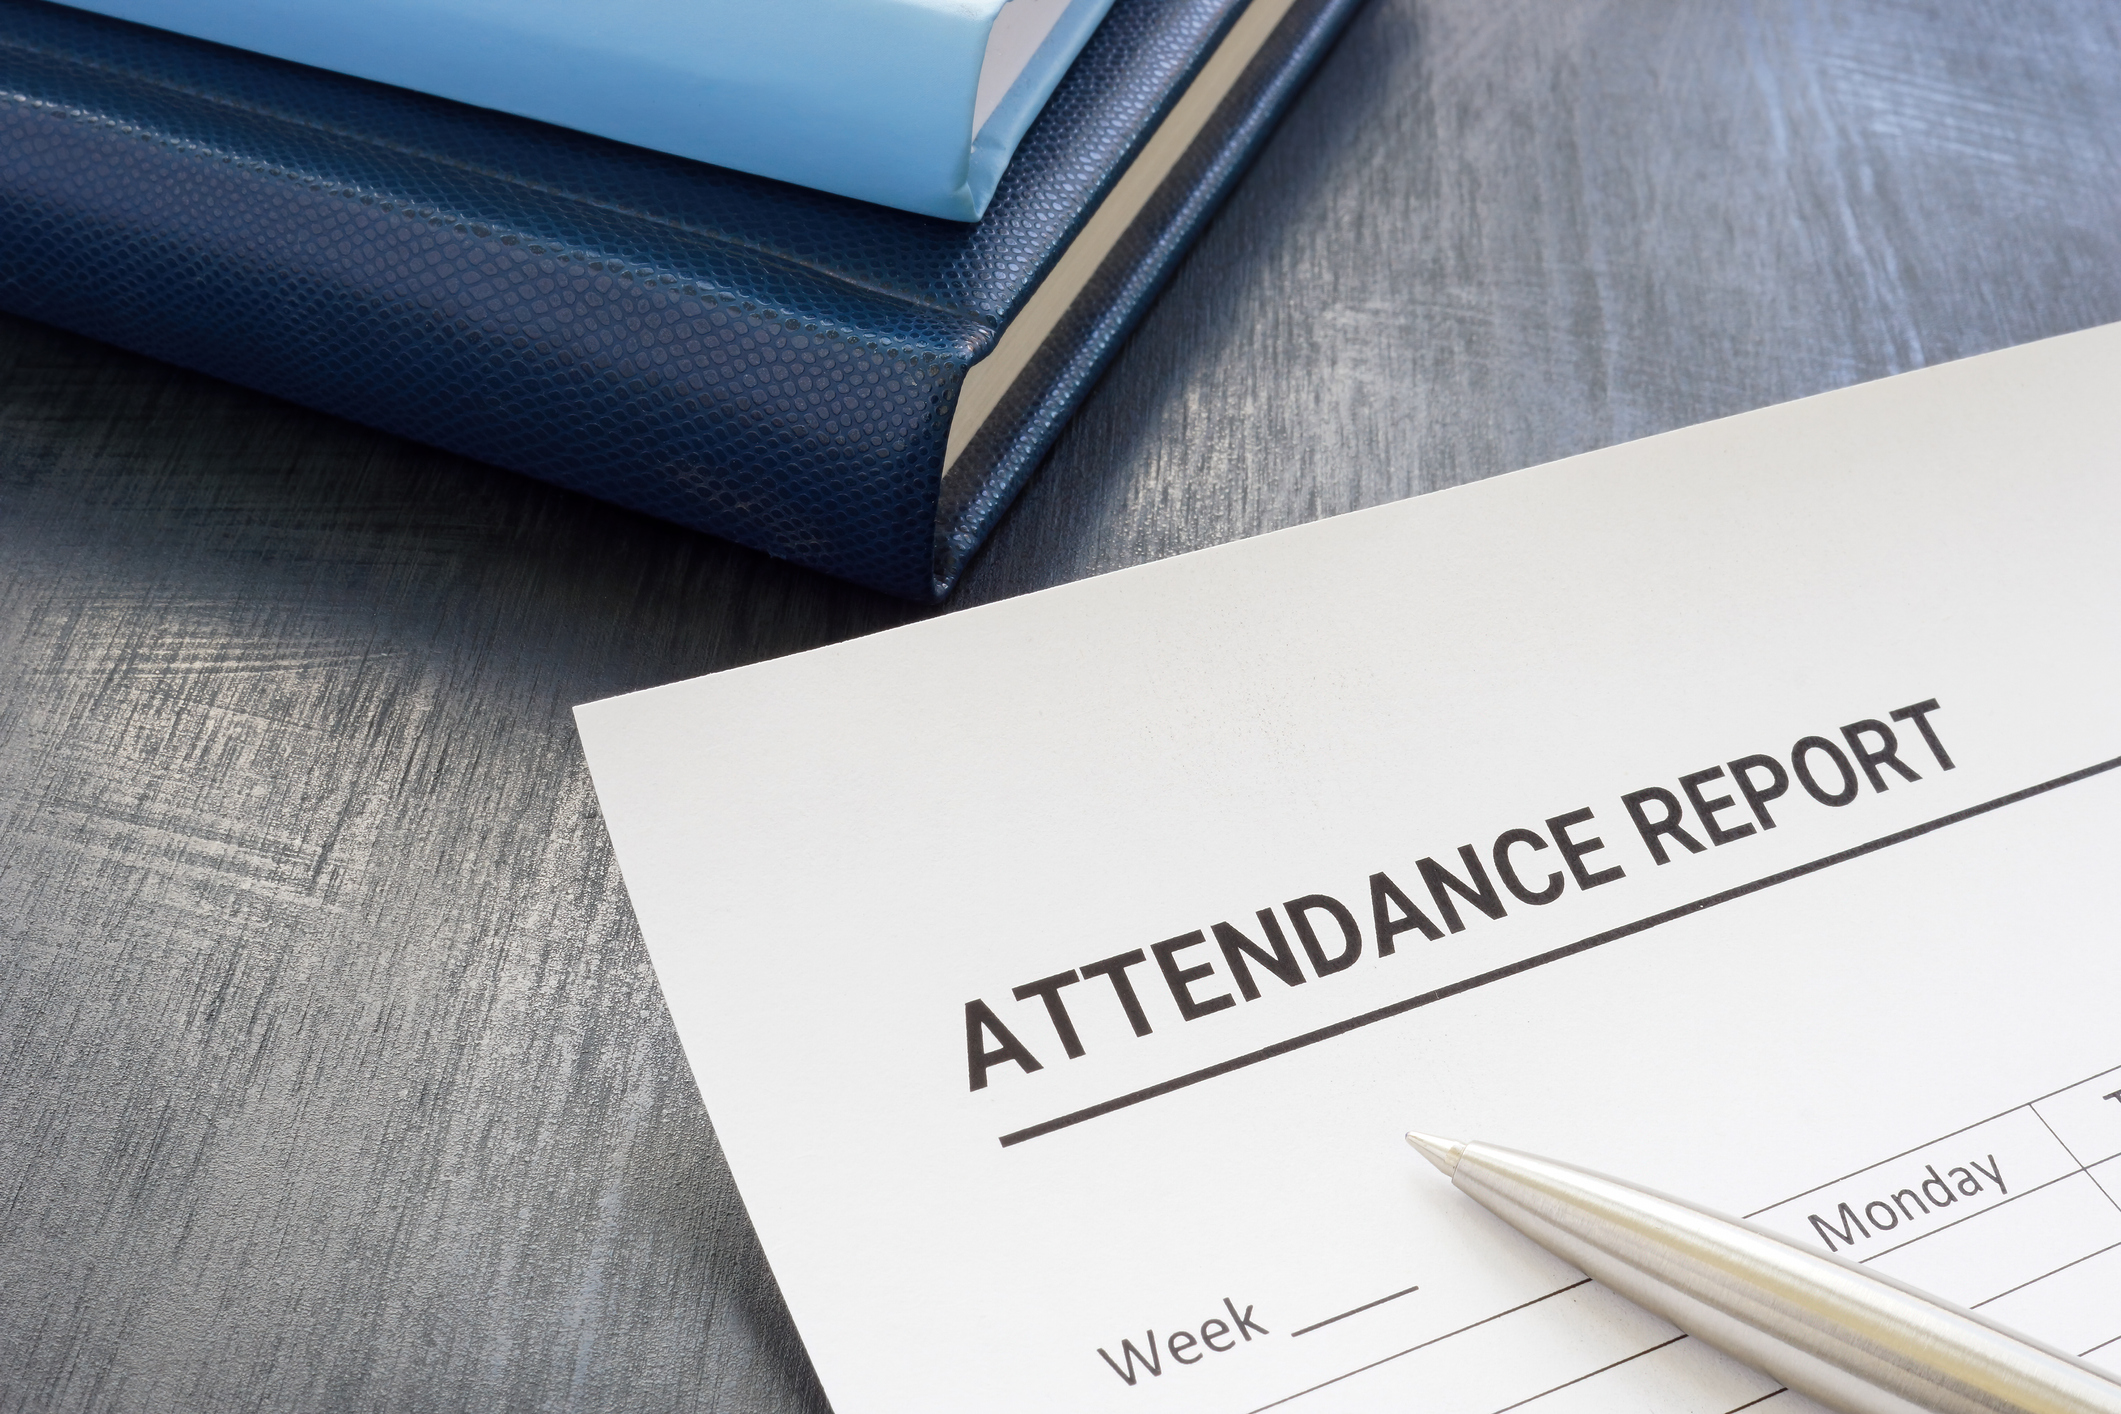 Attendance report